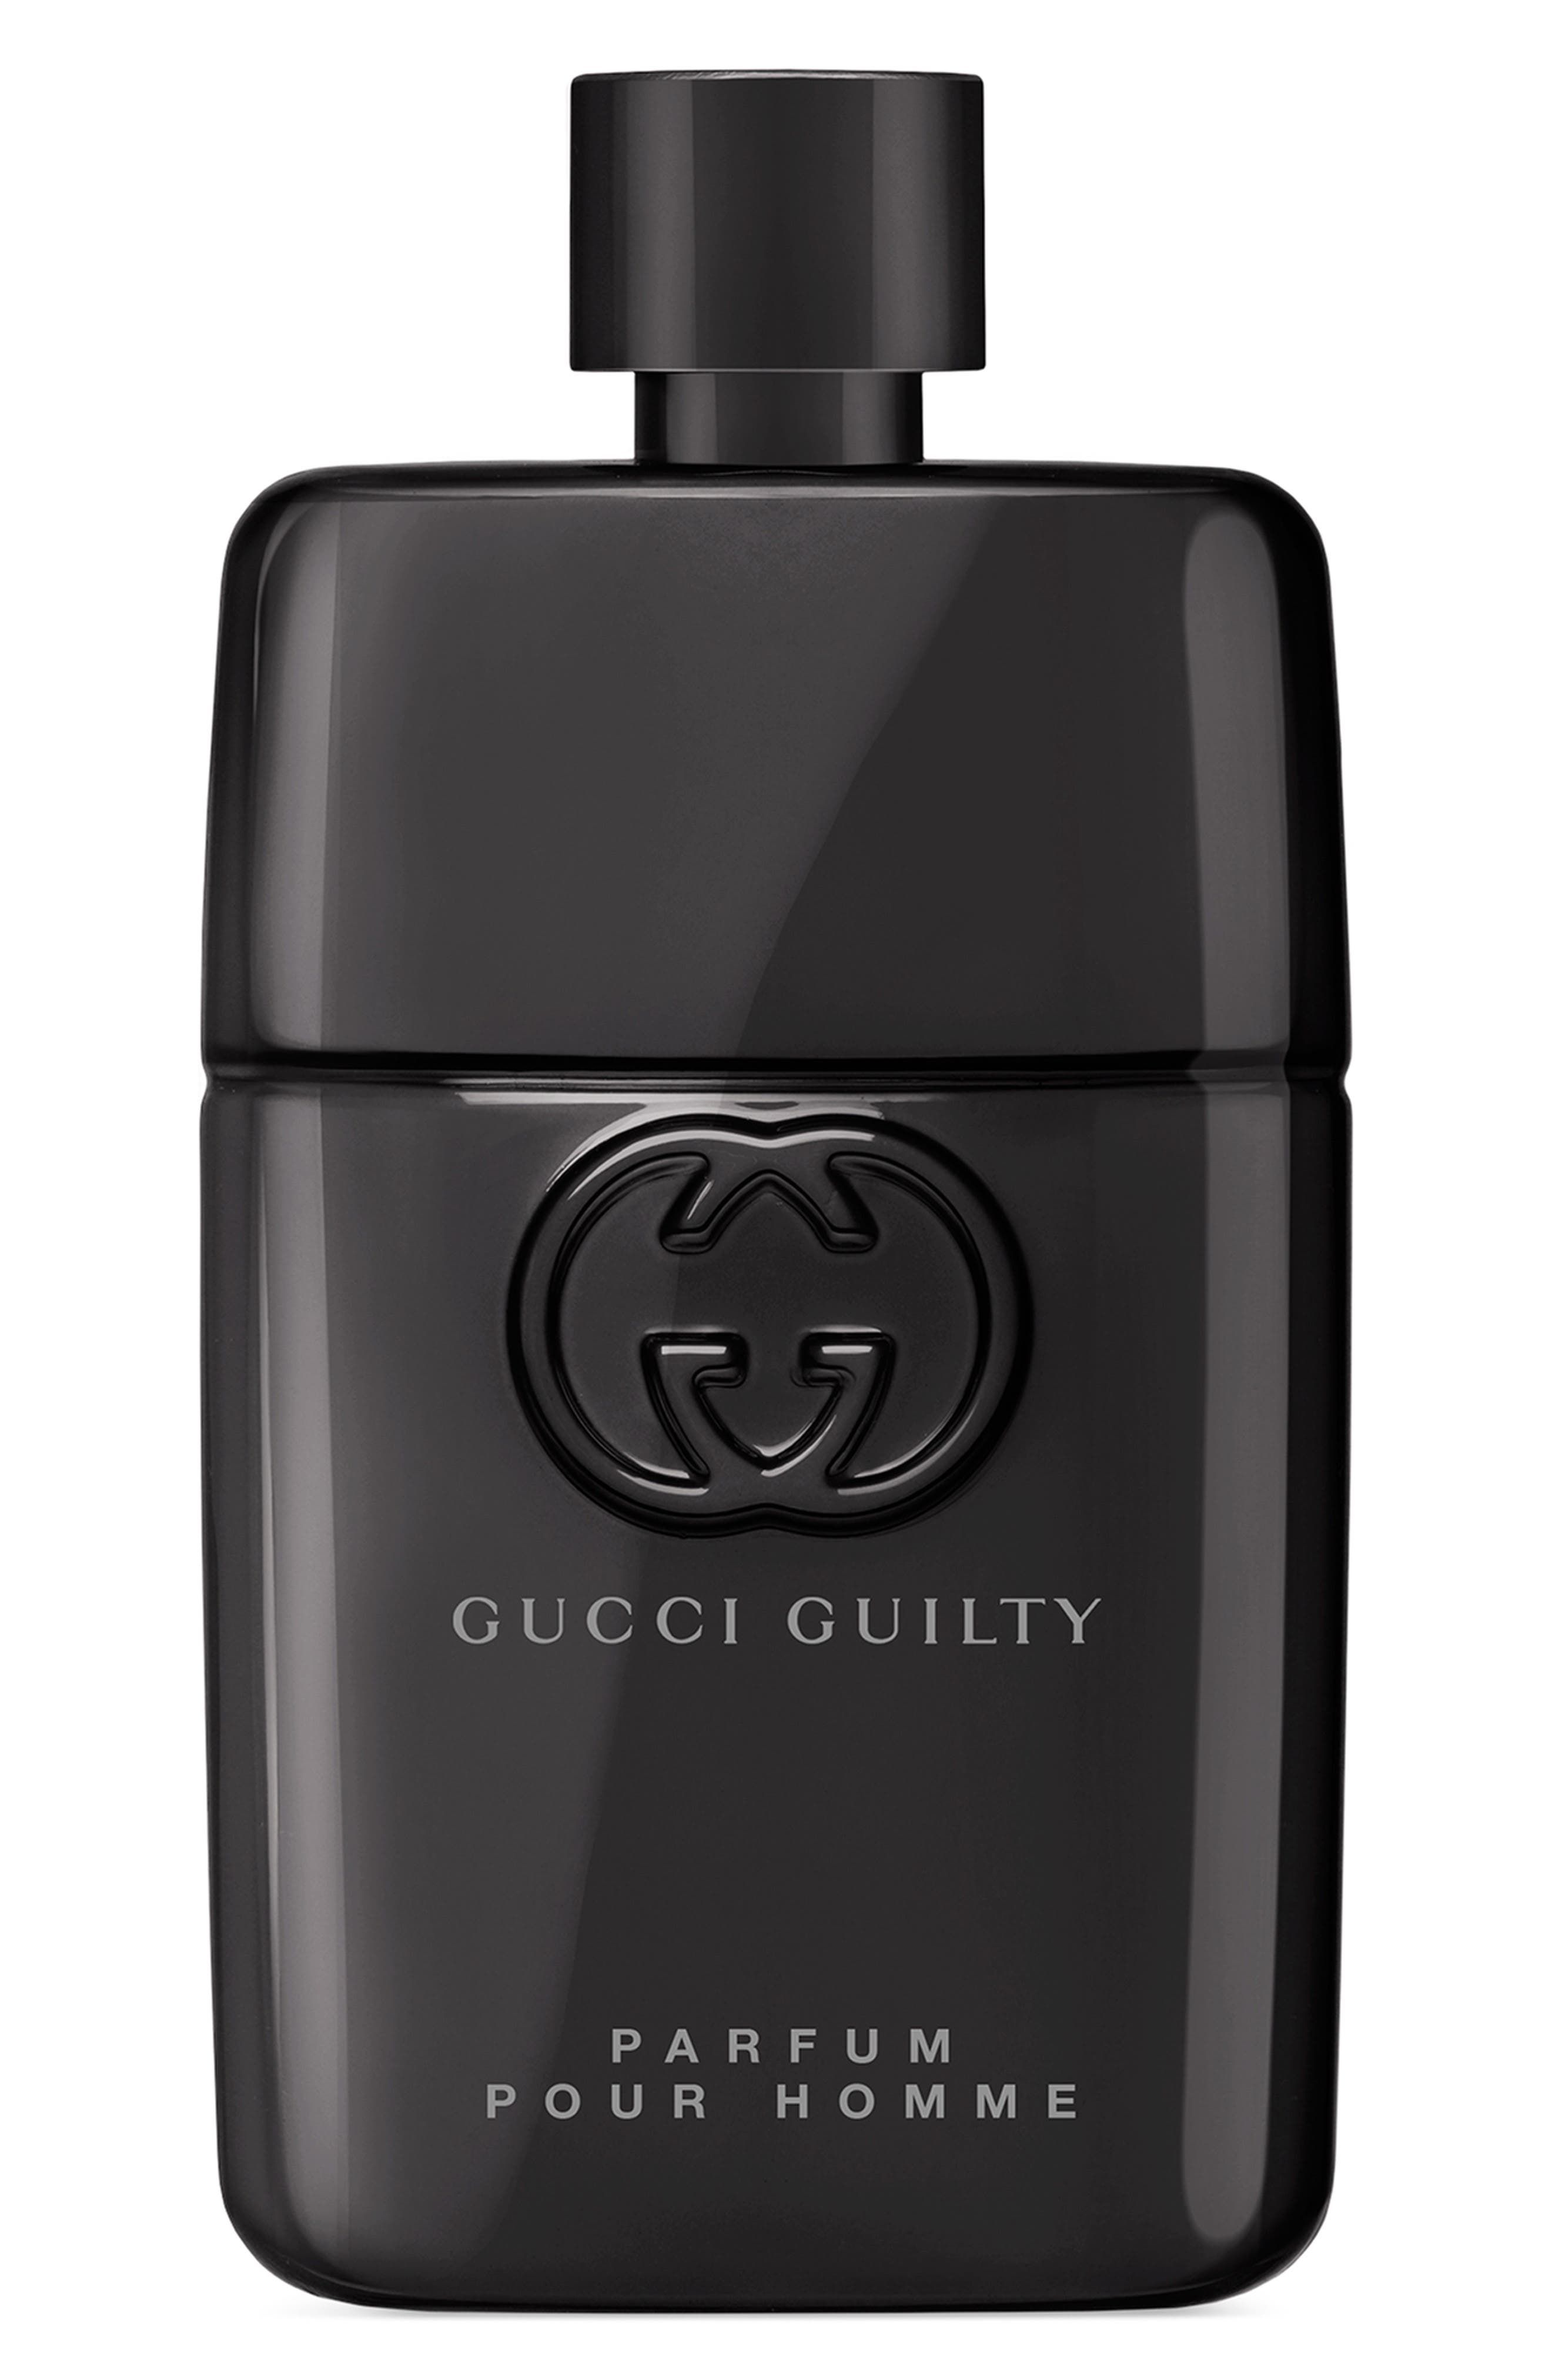 Туалетная вода gucci pour homme. Gucci guilty Parfum pour homme. Gucci guilty pour homme. Gucci guilty absolute pour homme. Gucci guilty pour homme Parfum 2022.